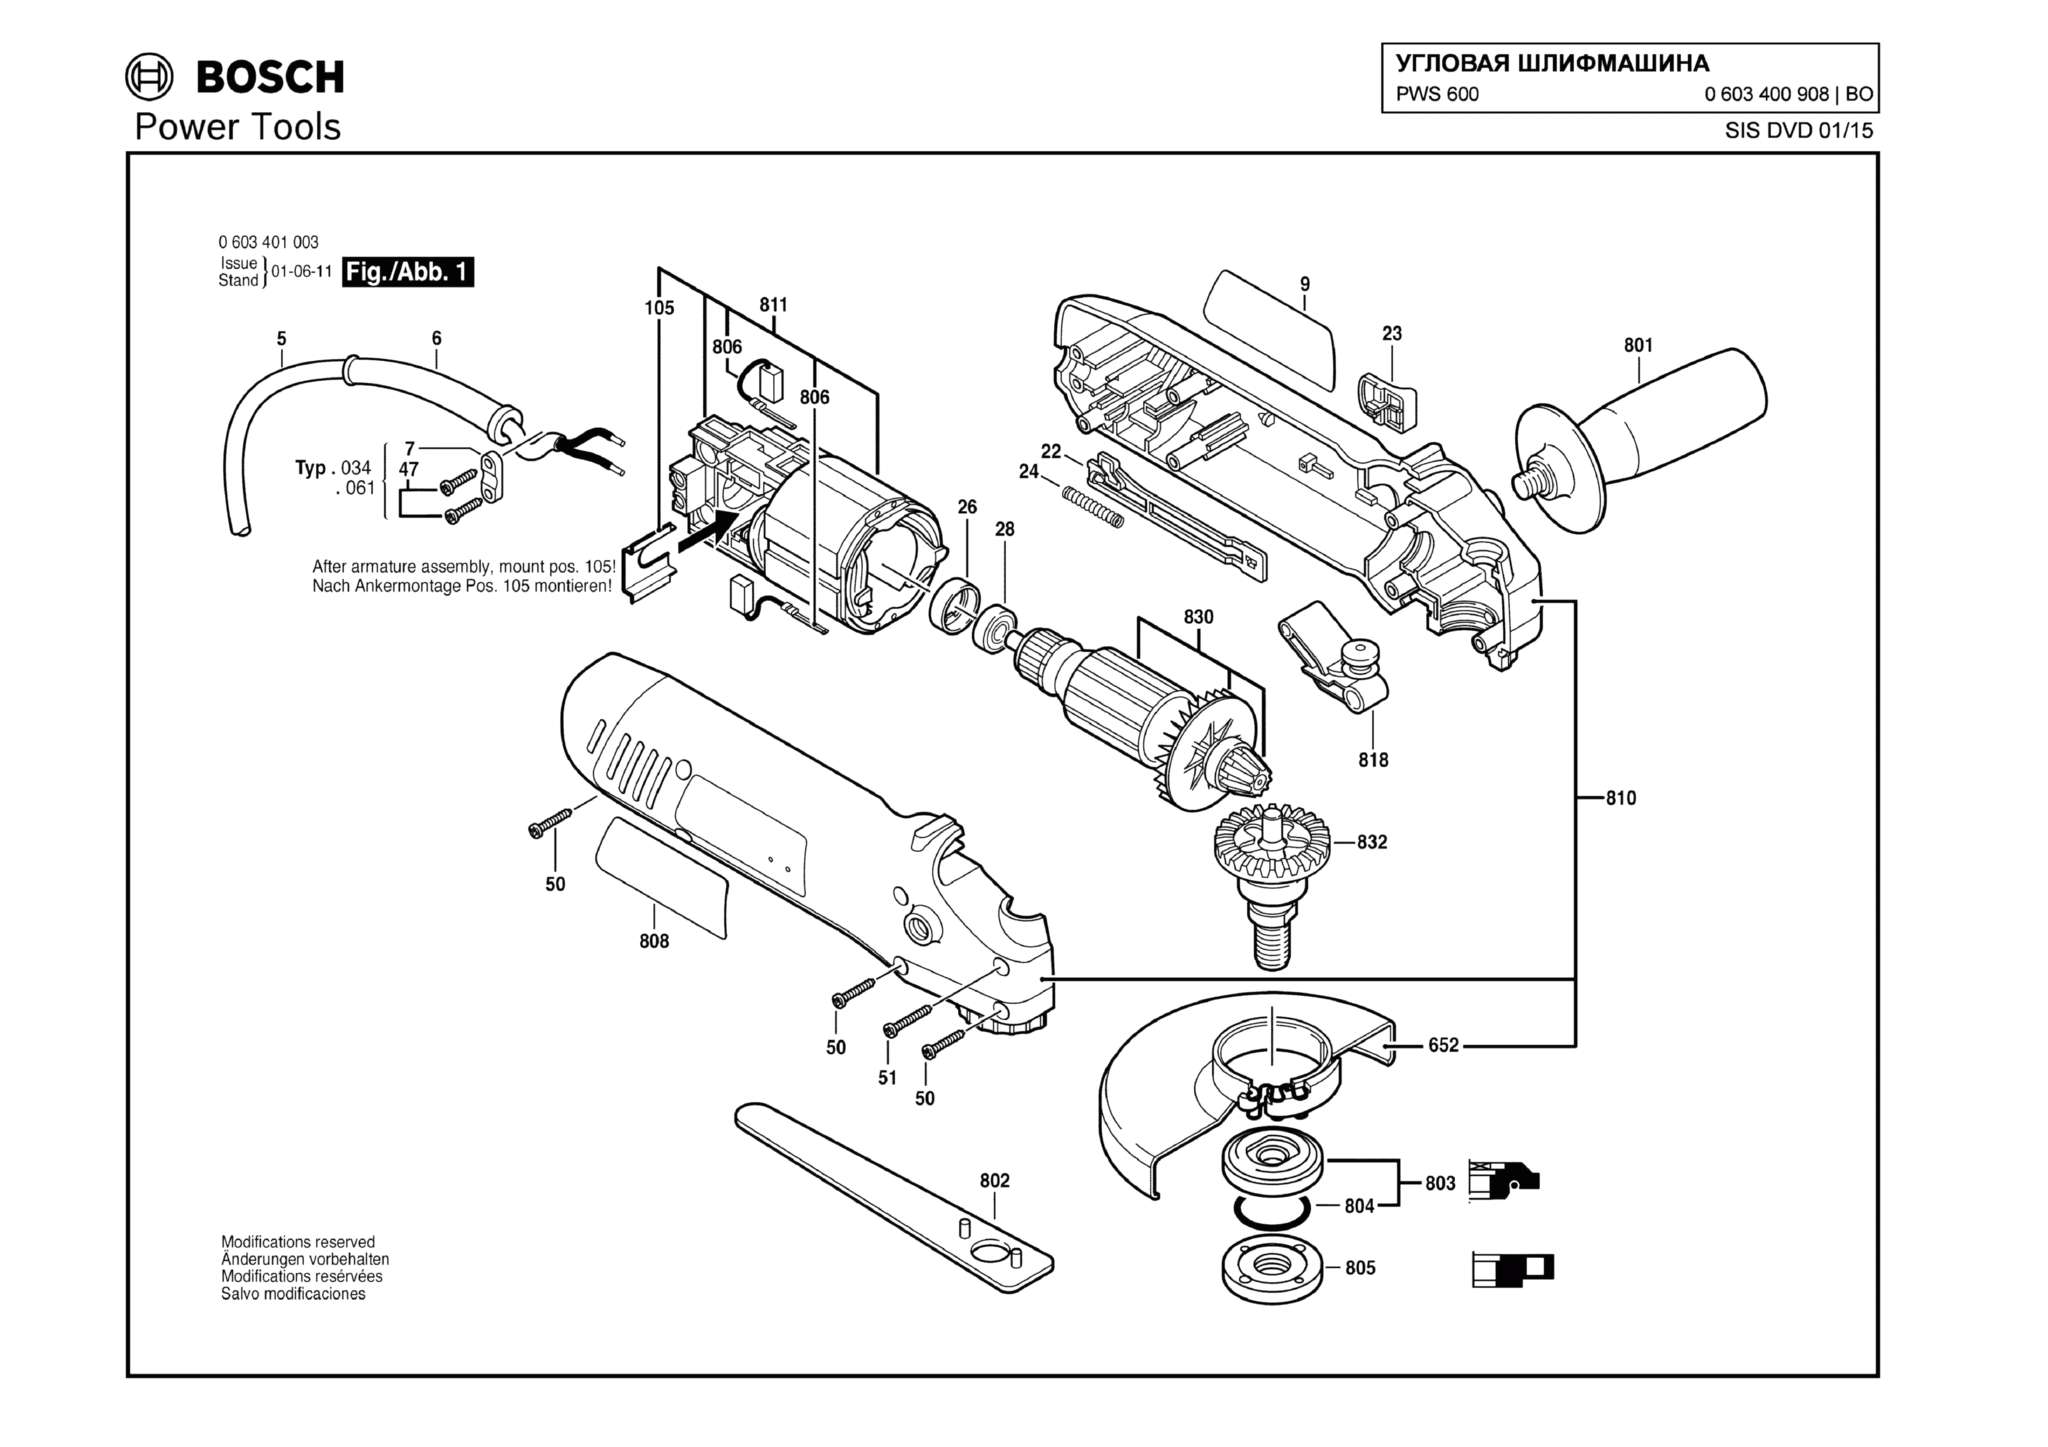 Запчасти, схема и деталировка Bosch PWS 600 (ТИП 0603400908)